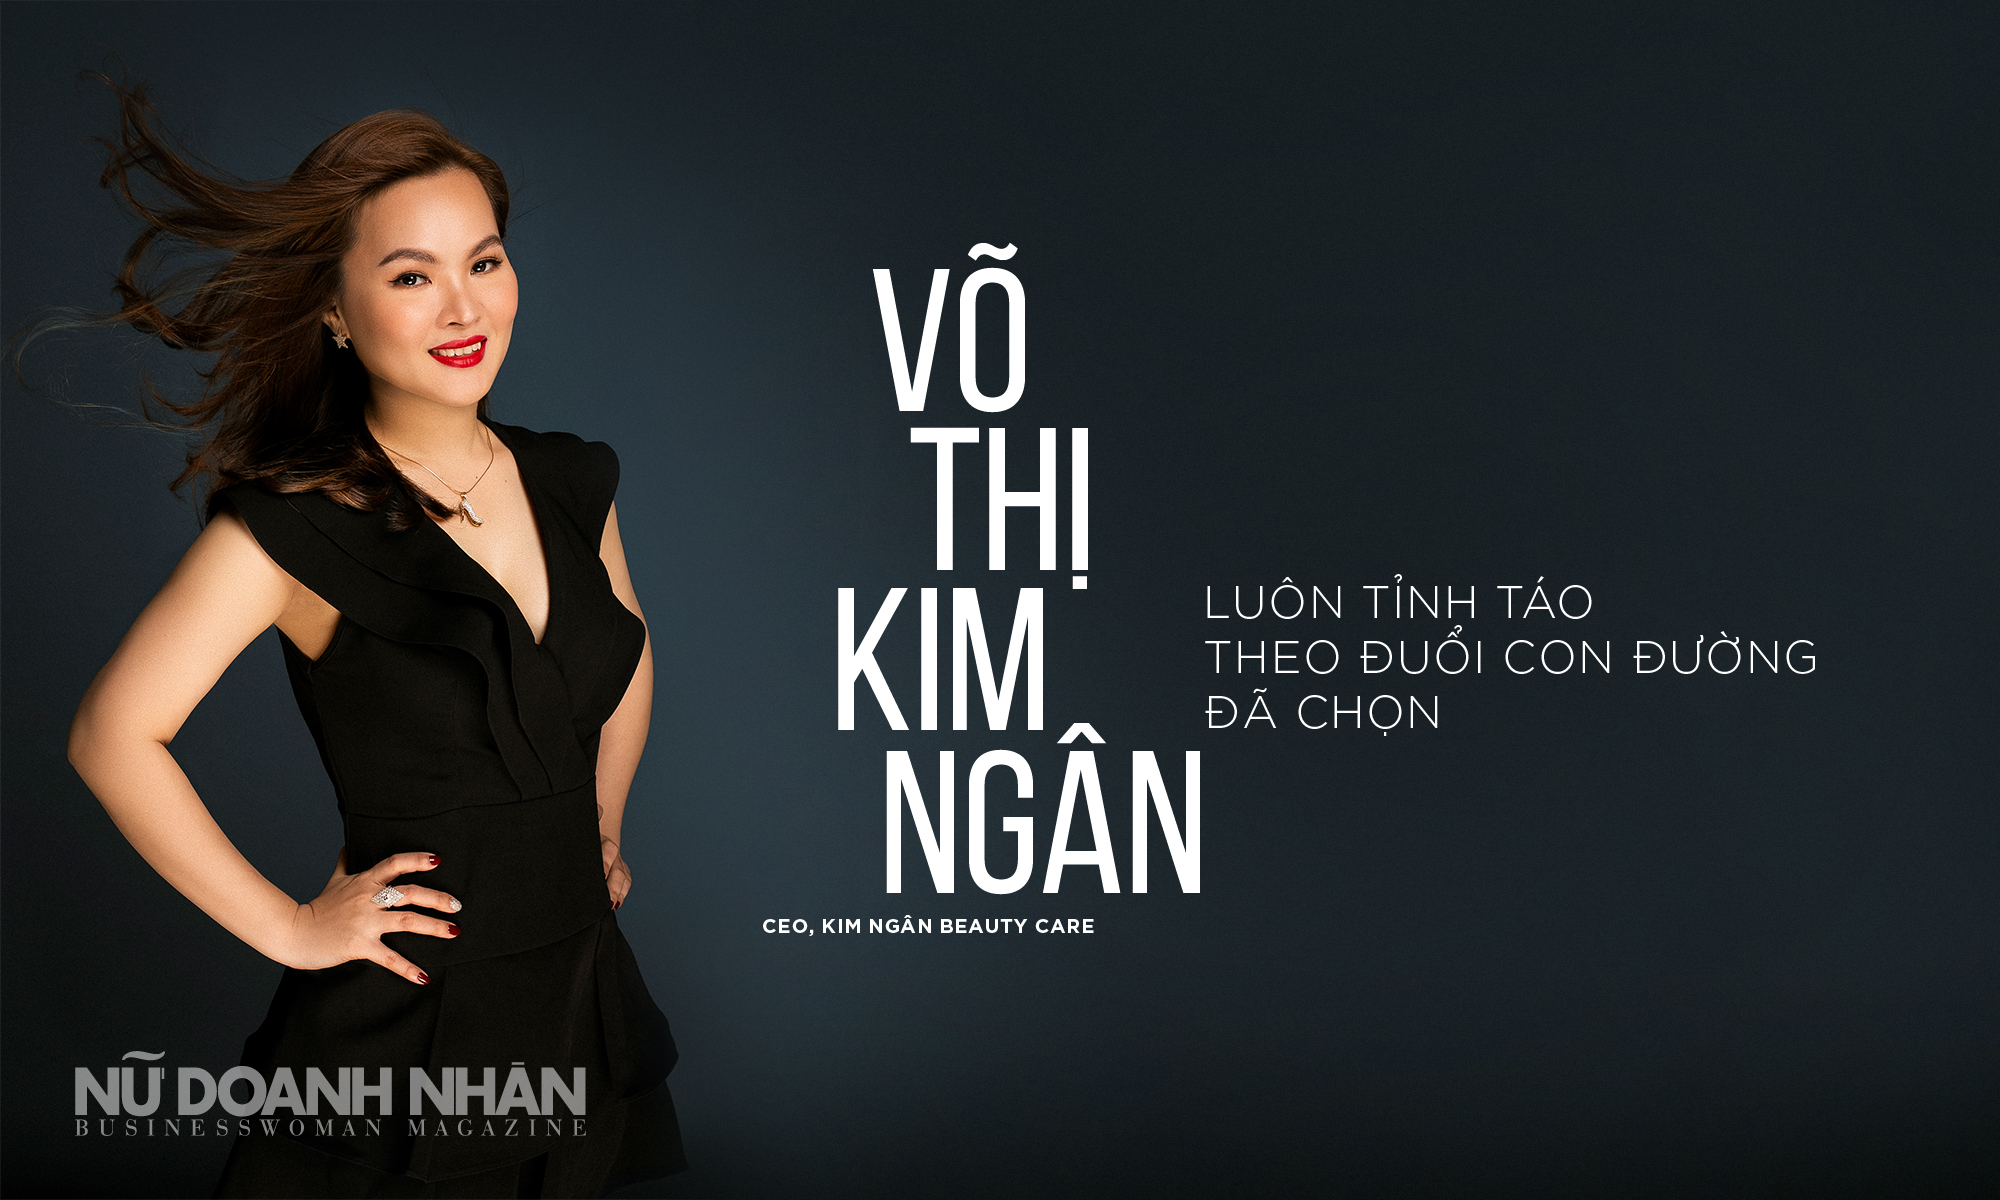 CEO Kim Ngân Beauty Care, Võ Thị Kim Ngân: Luôn tỉnh táo theo đuổi con đường đã chọn